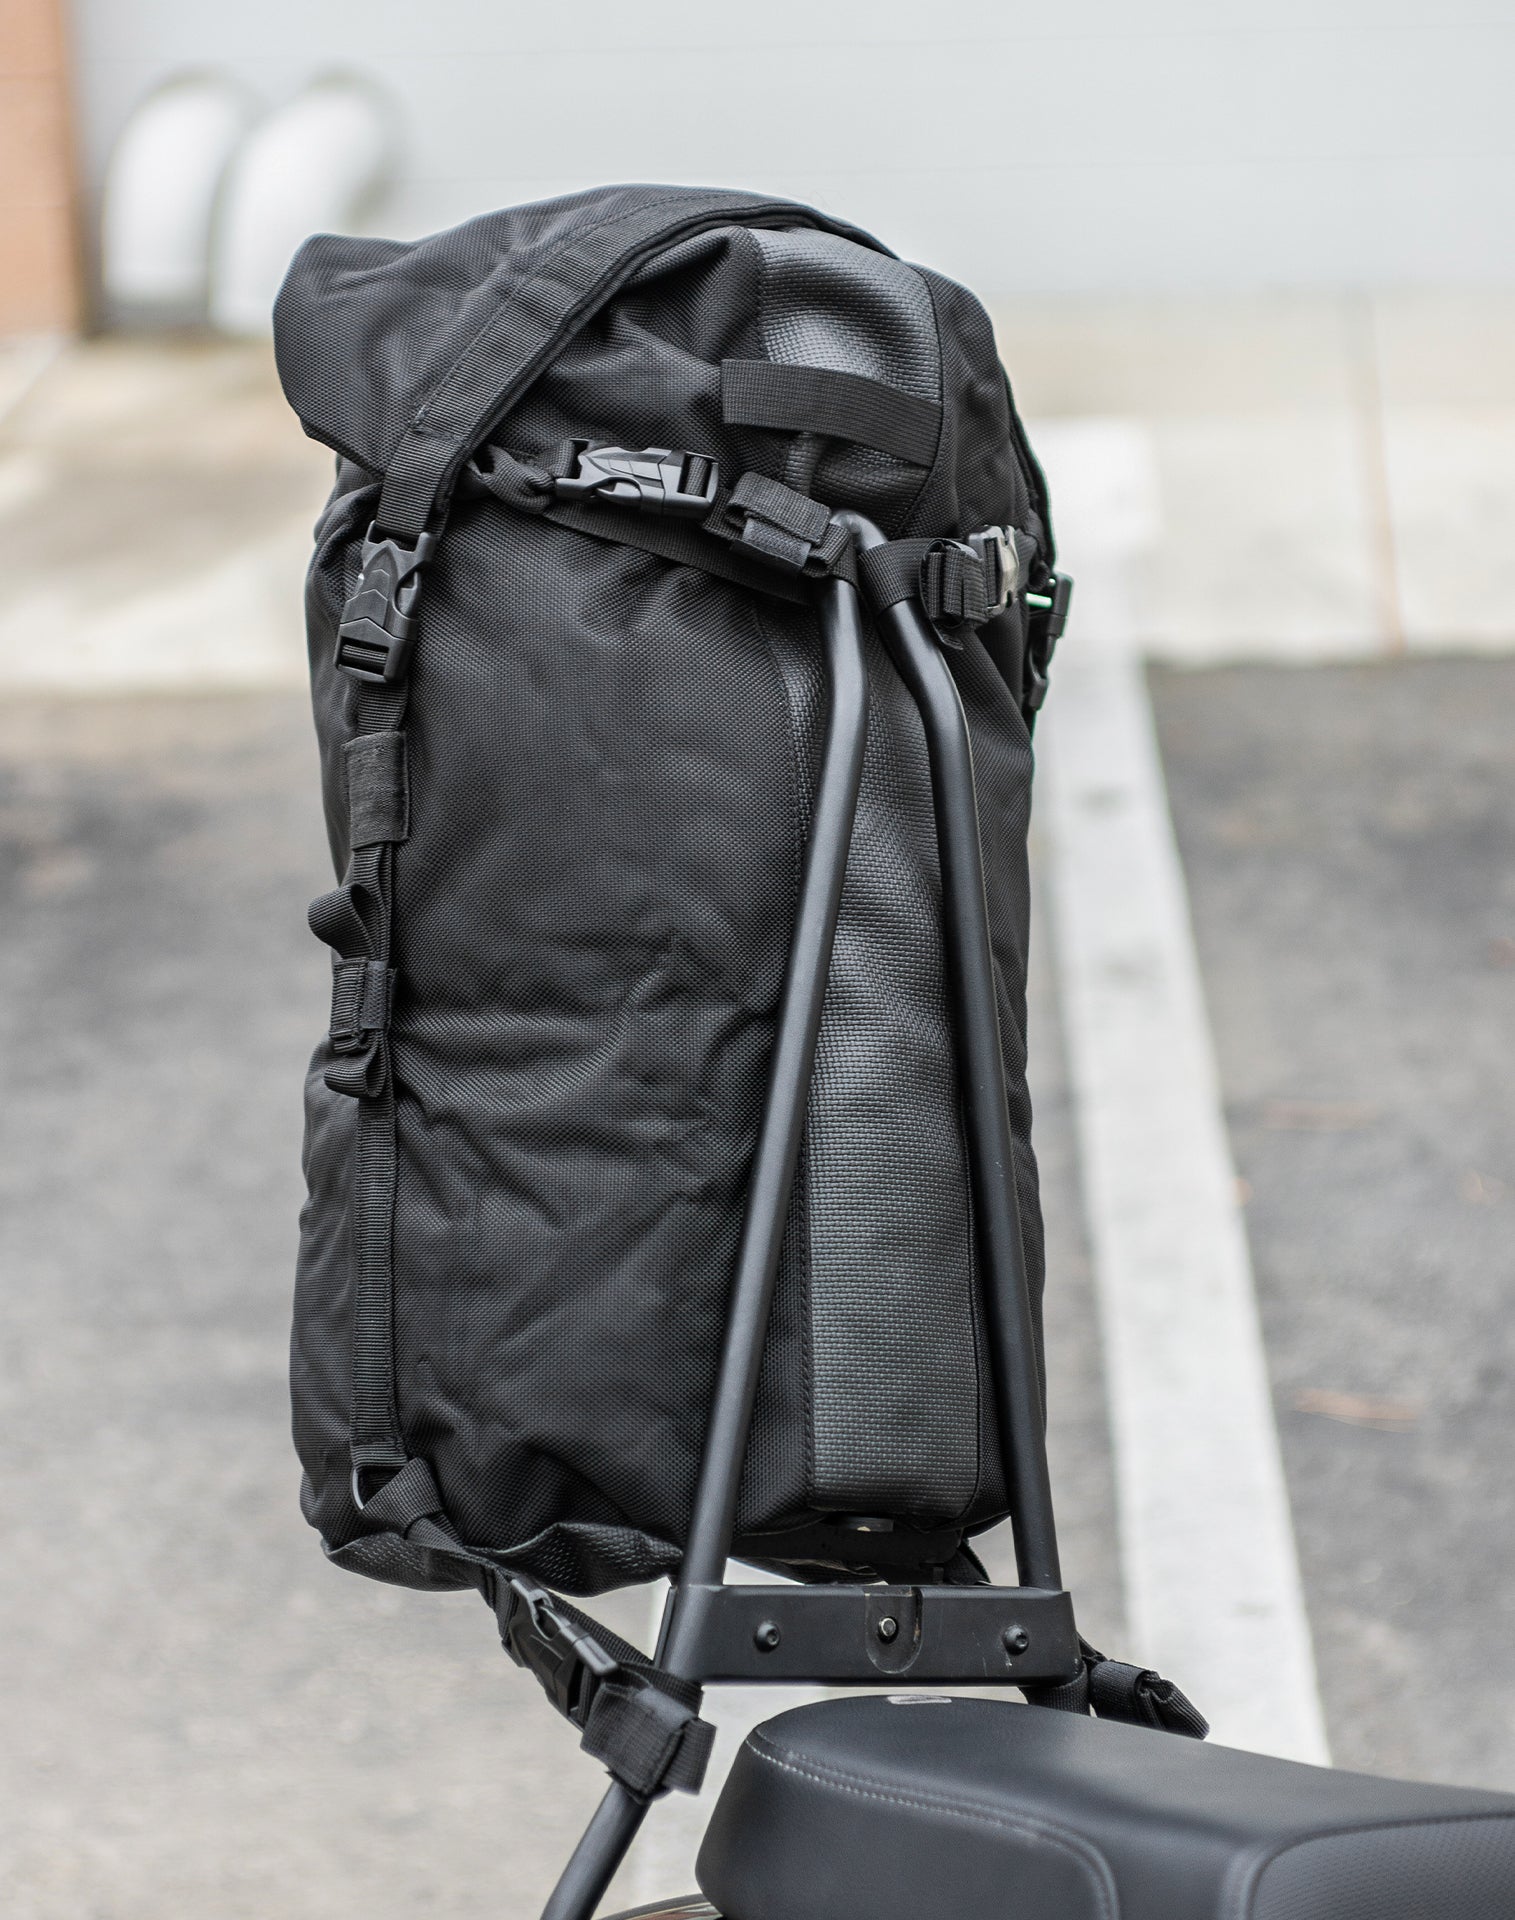 35L - Renegade XL Motorcycle Tail Bag